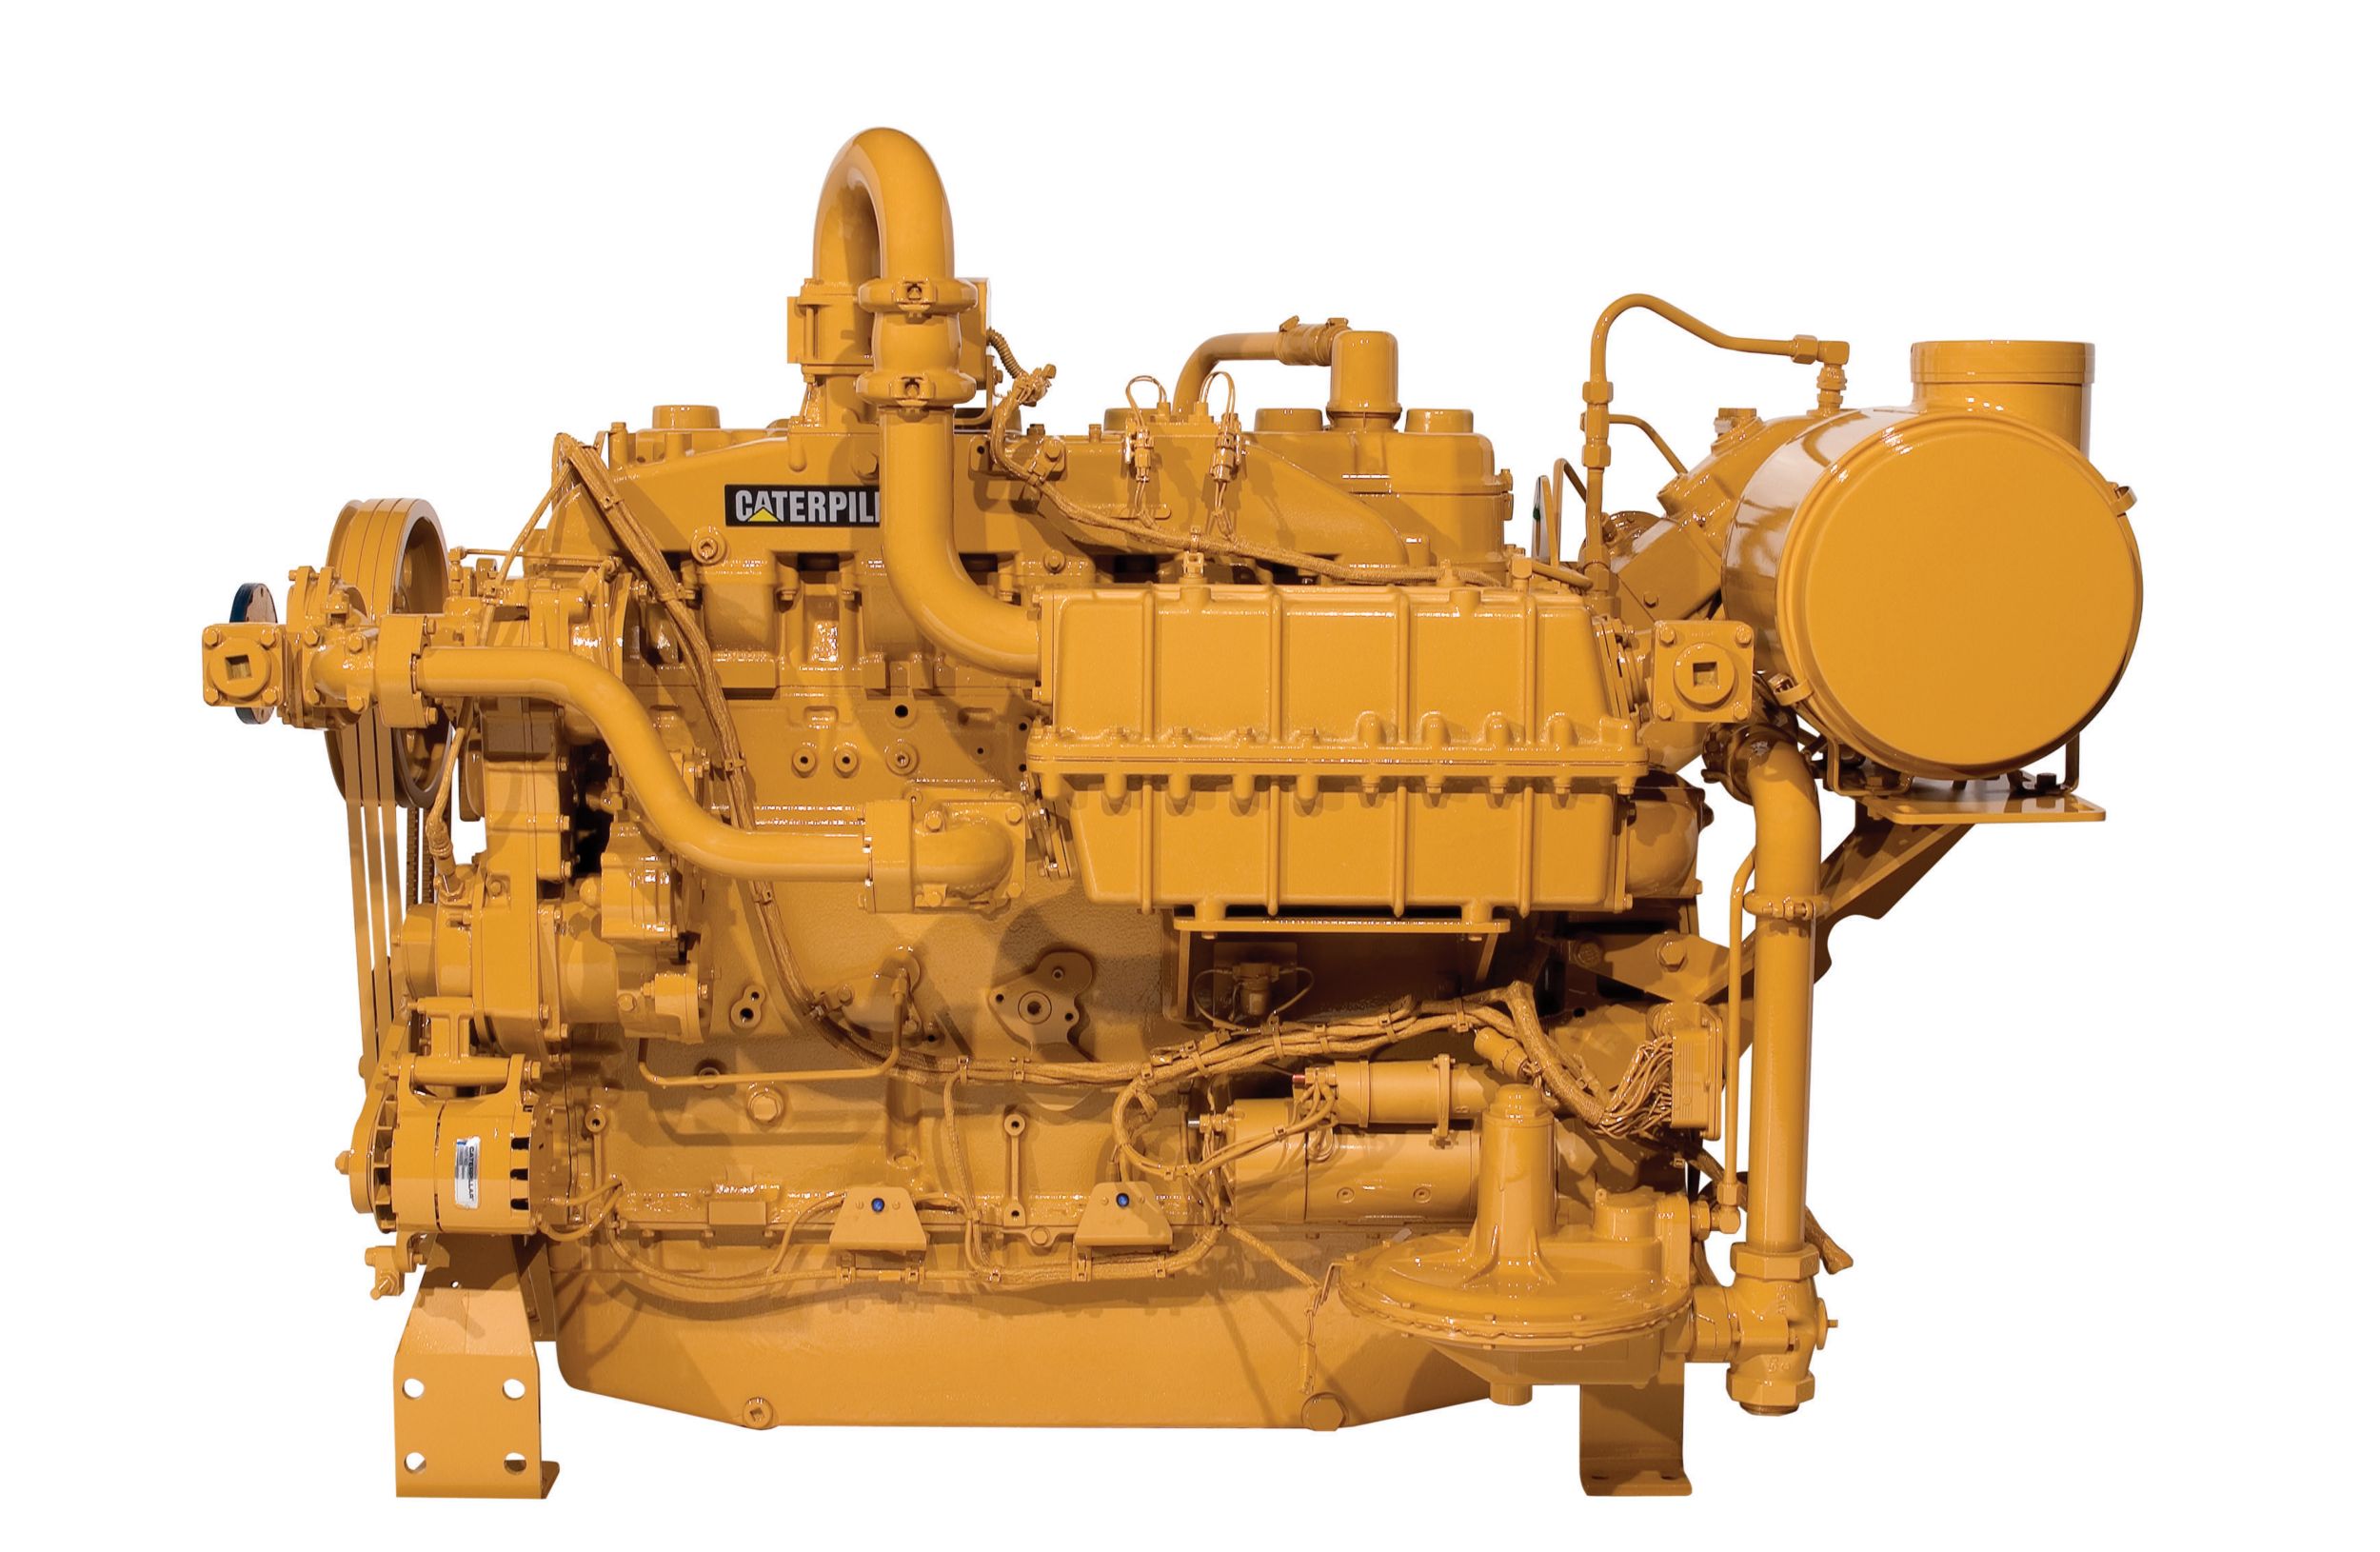 Motores de Compressão de Gás (TA) G3406, Motores de Compressão de Gás